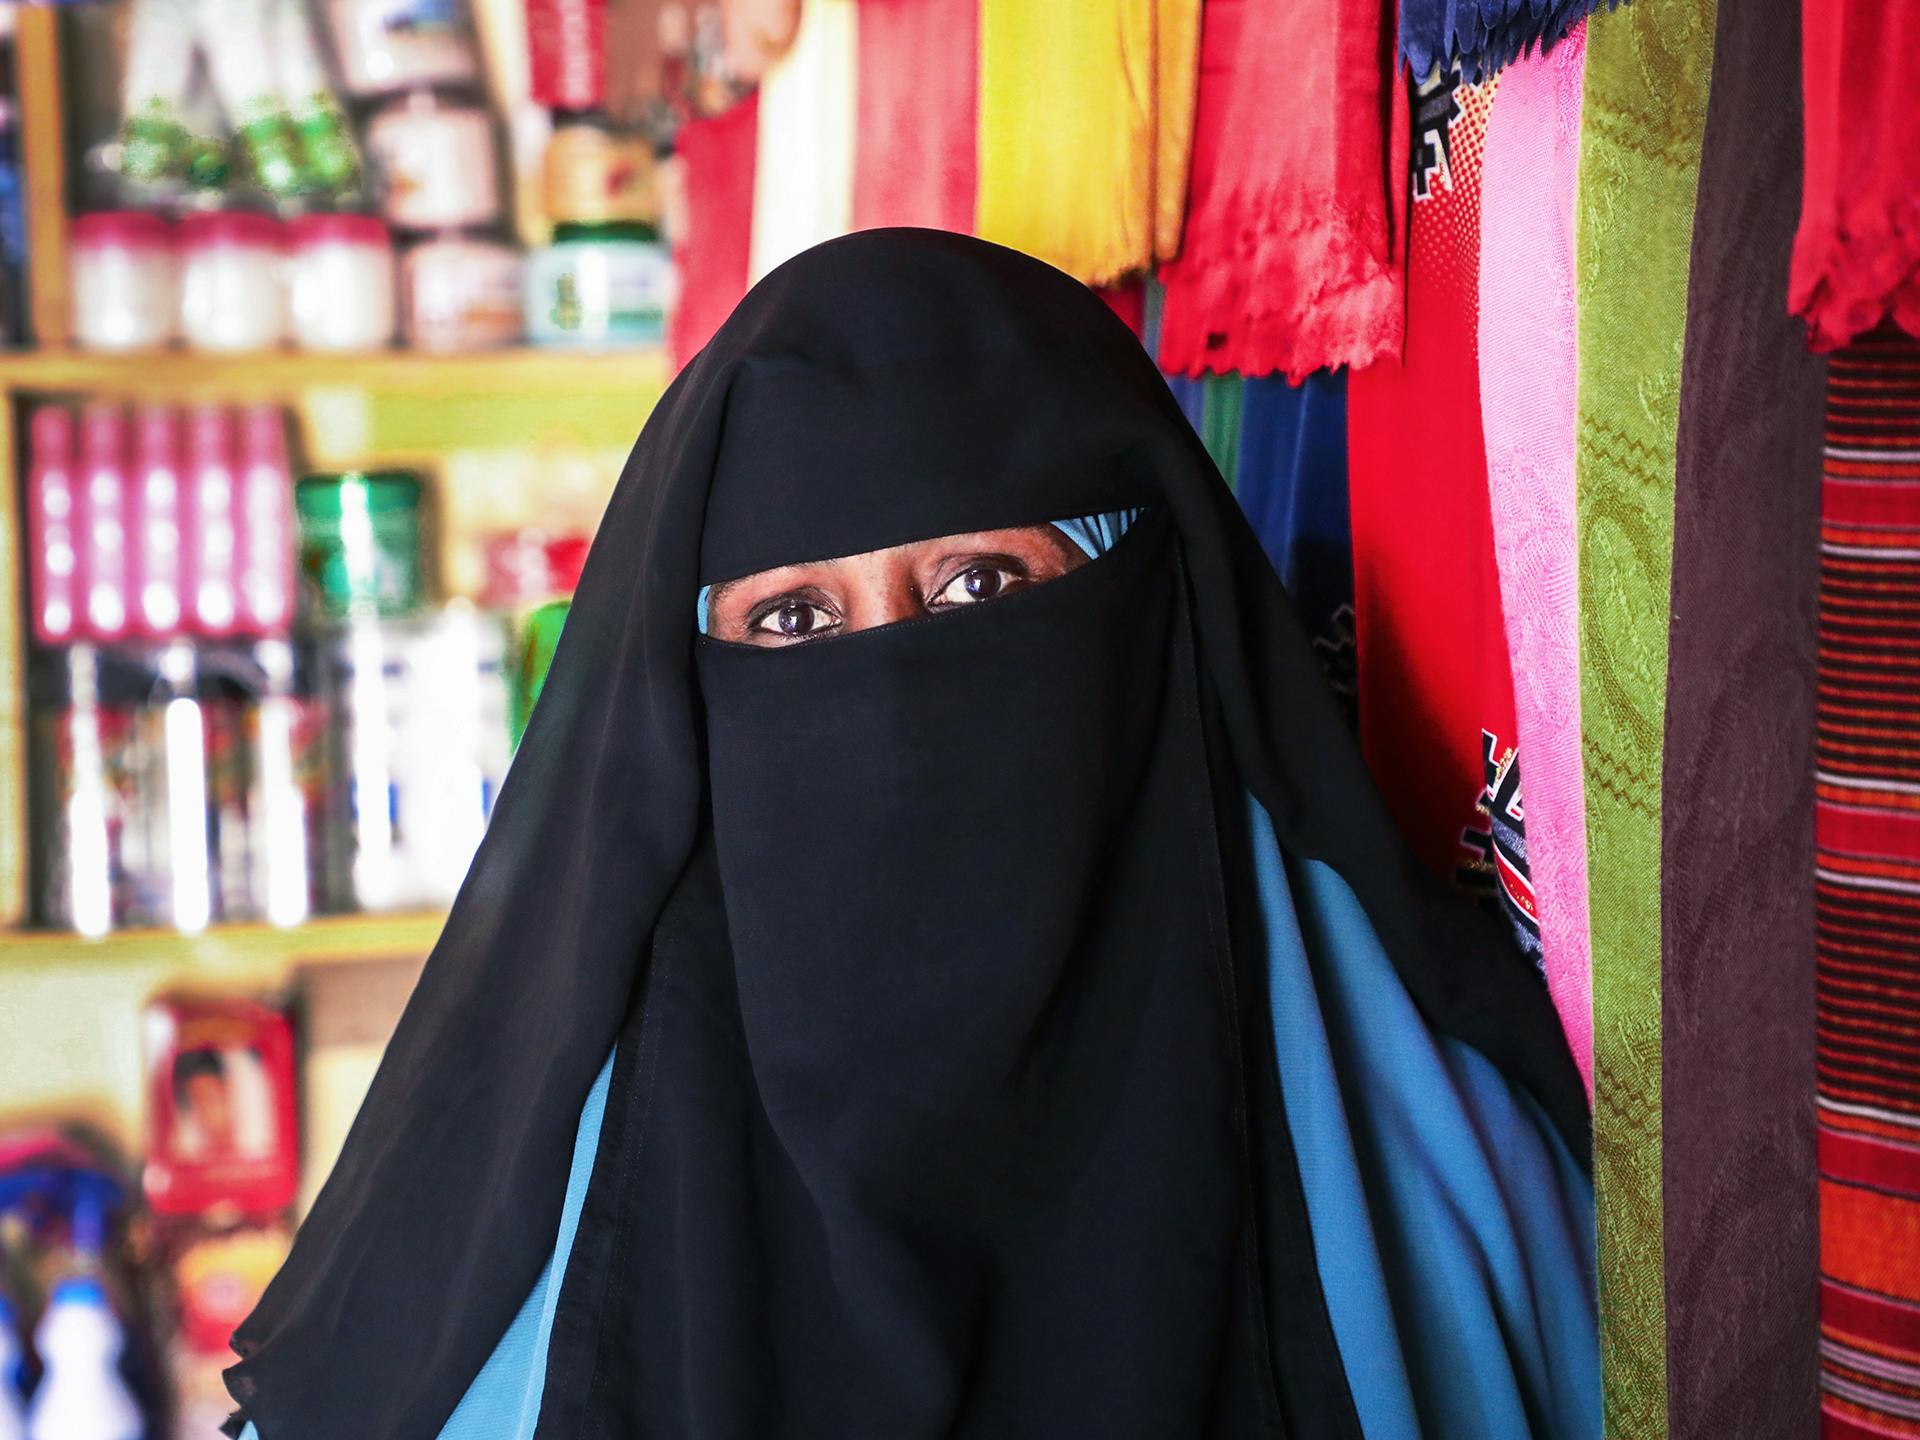 Närbild av kvinna i svart niqab och blå hiijab i en butik. I bakgrunden syns hyllor med livsmedelsprodukter och tyger i olika färger och mönster.